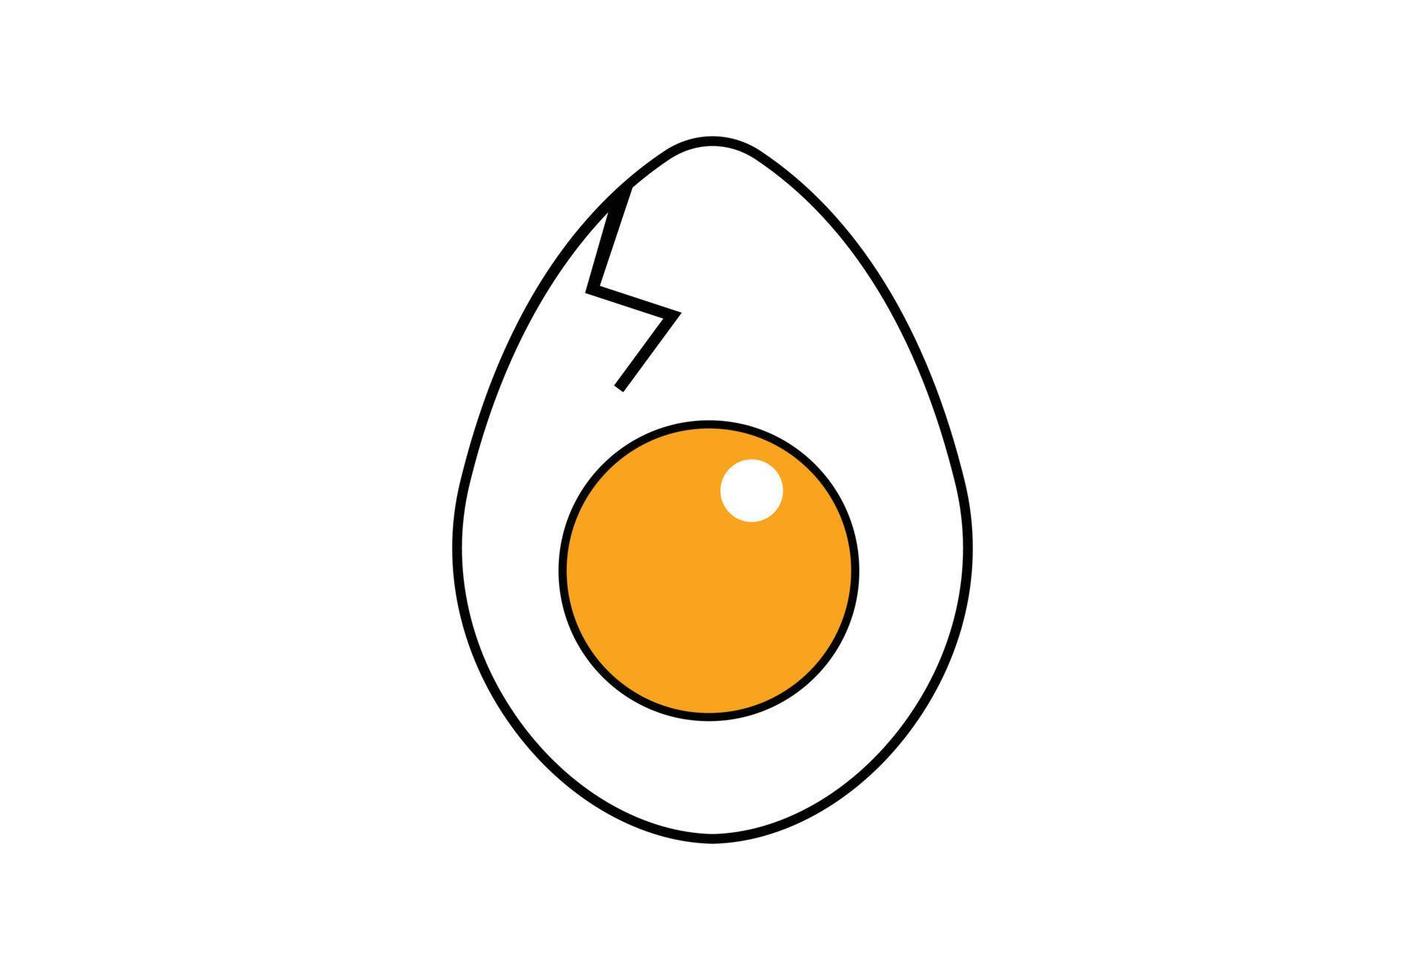 fresco ovo logotipo projeto, vetor Projeto conceito